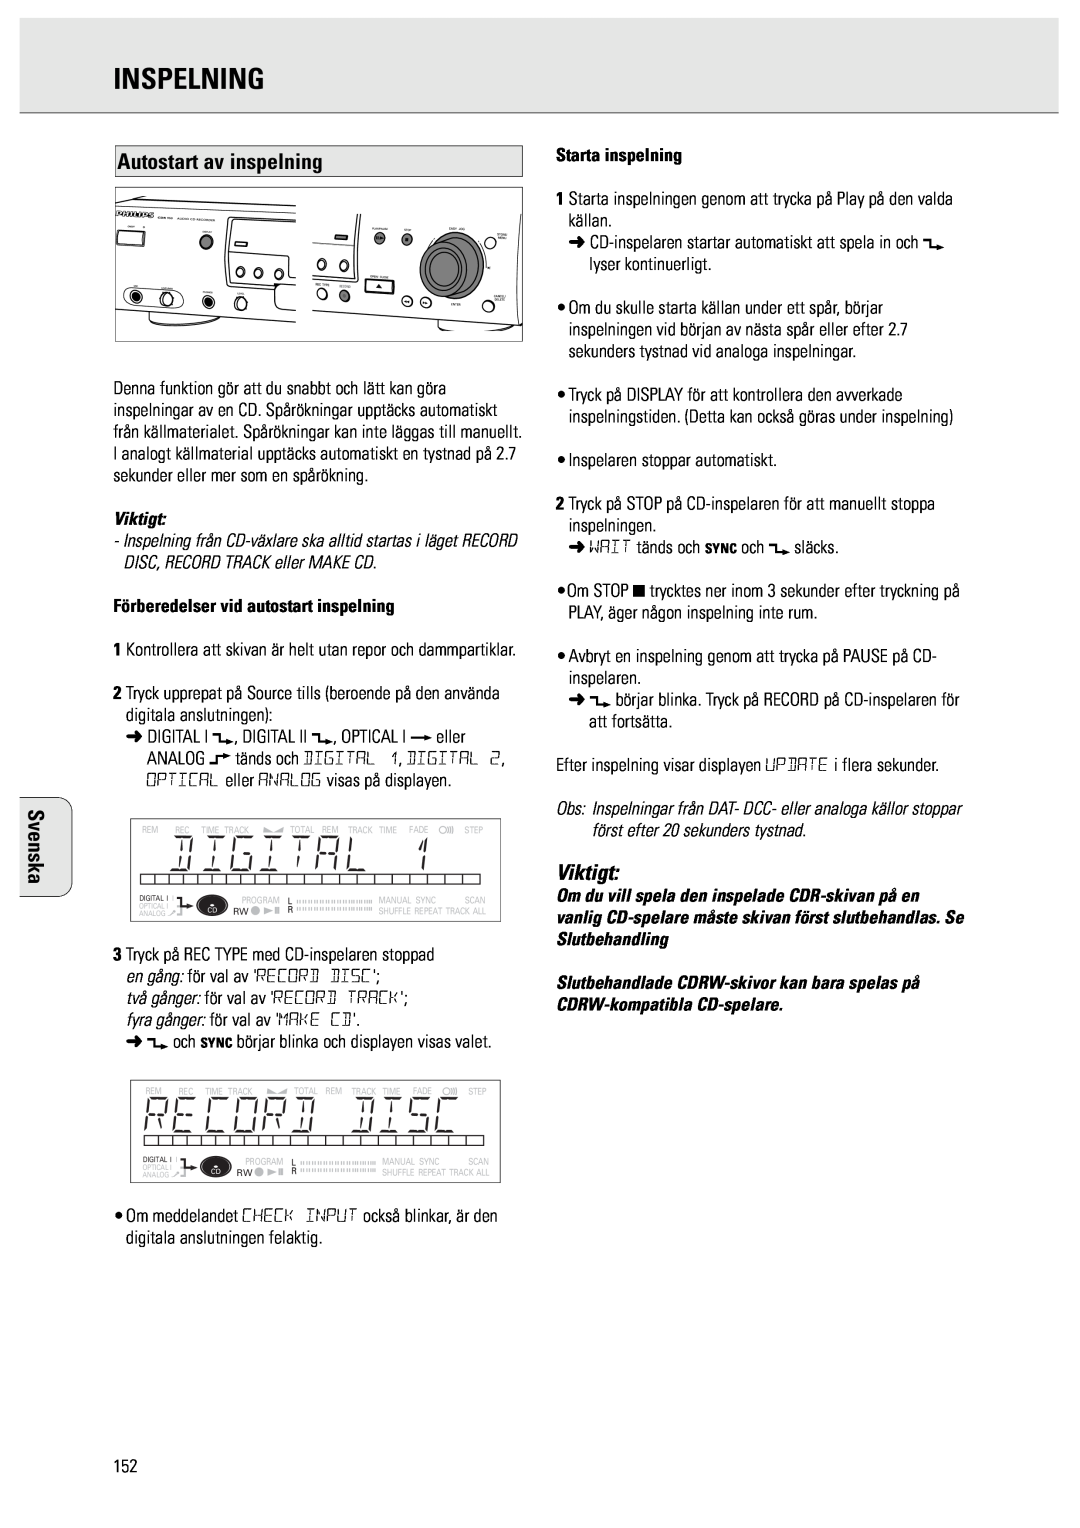 Philips CDR950/951 manual Autostart av inspelning, Förberedelser vid autostart inspelning, Inspelning, Svenska, Viktigt 